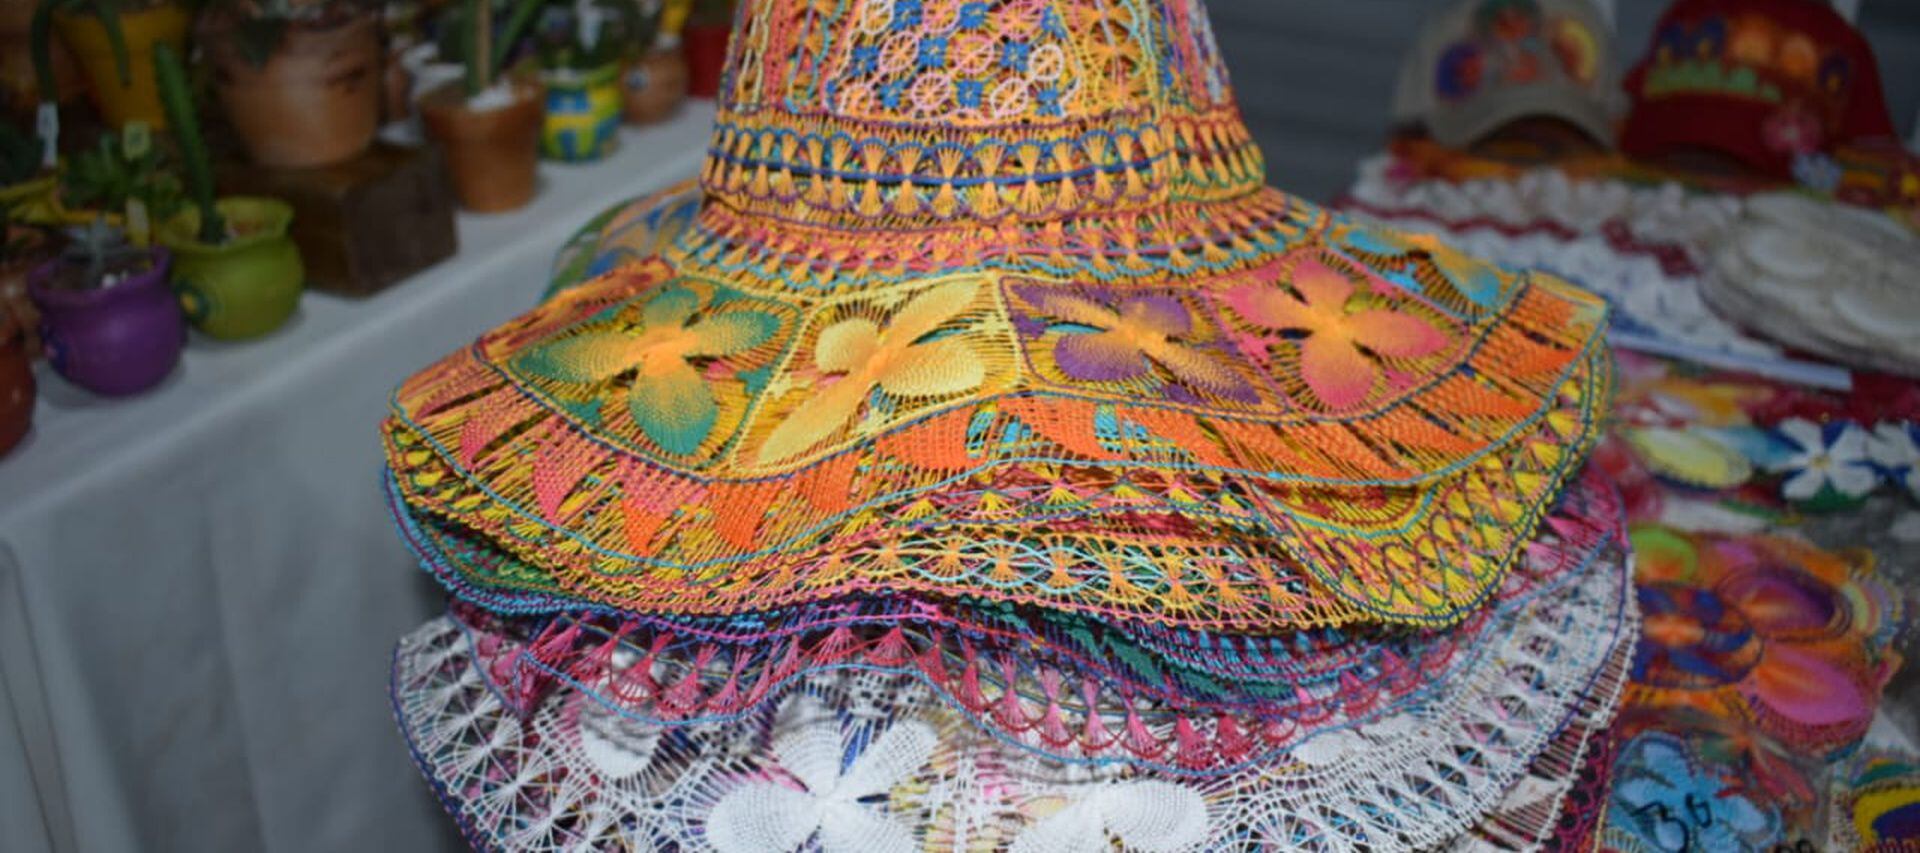 Artesanas de Itauguá exponen en la noche bellos artículos de Ñandutí, como carteras, sombreros, billeteras, aros, llaveros, termos, manteles, banderas, prendas de vestir, calzados y otros.